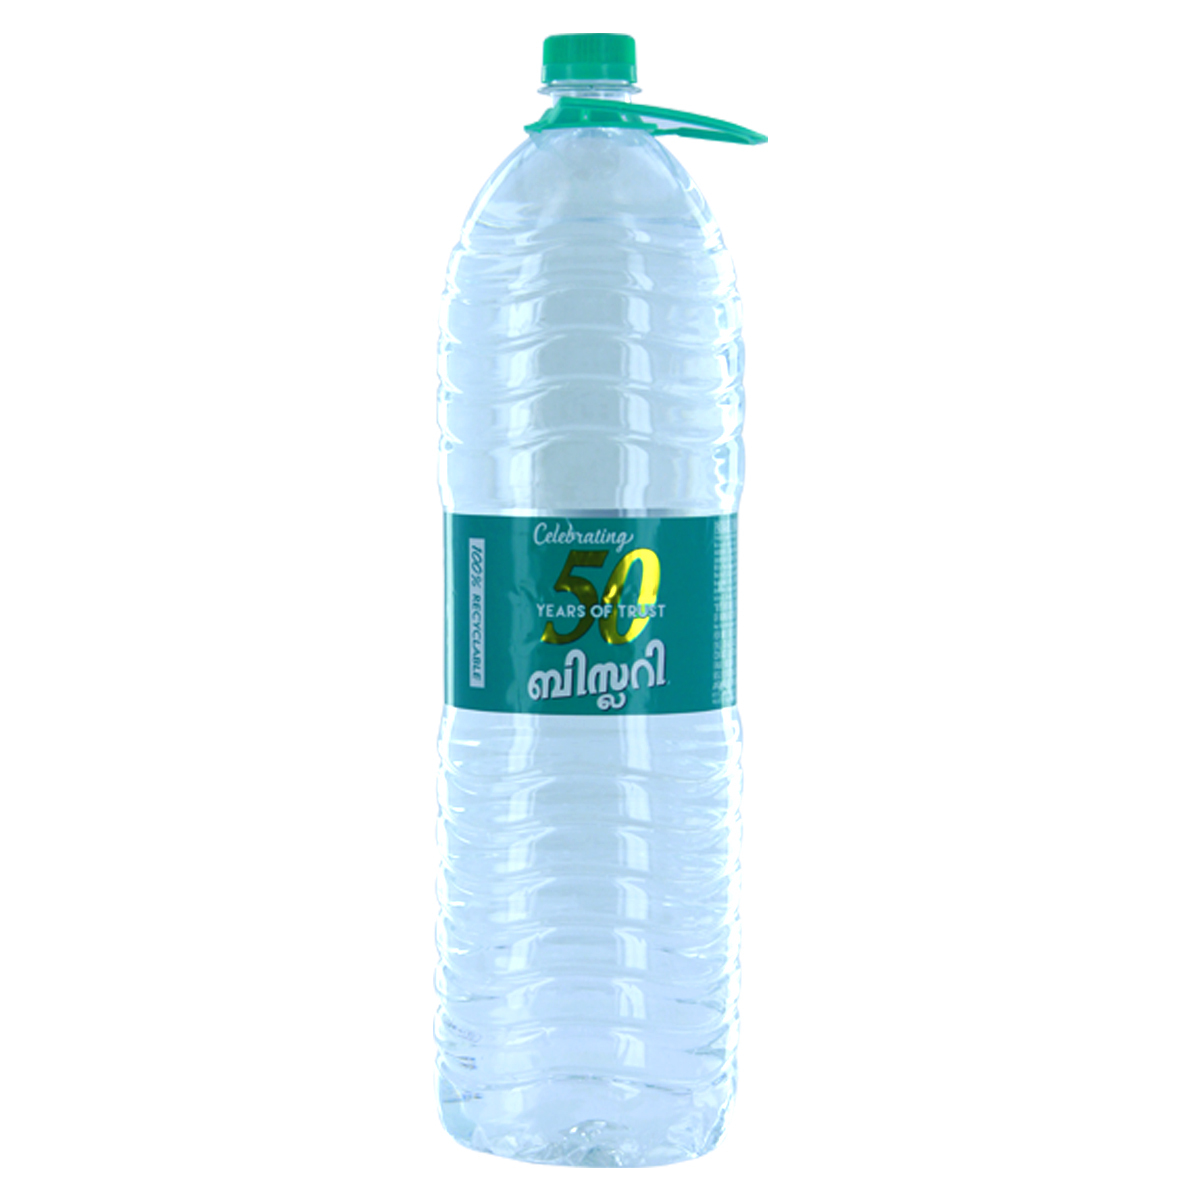 Bisleri Mineral Water 2Litre